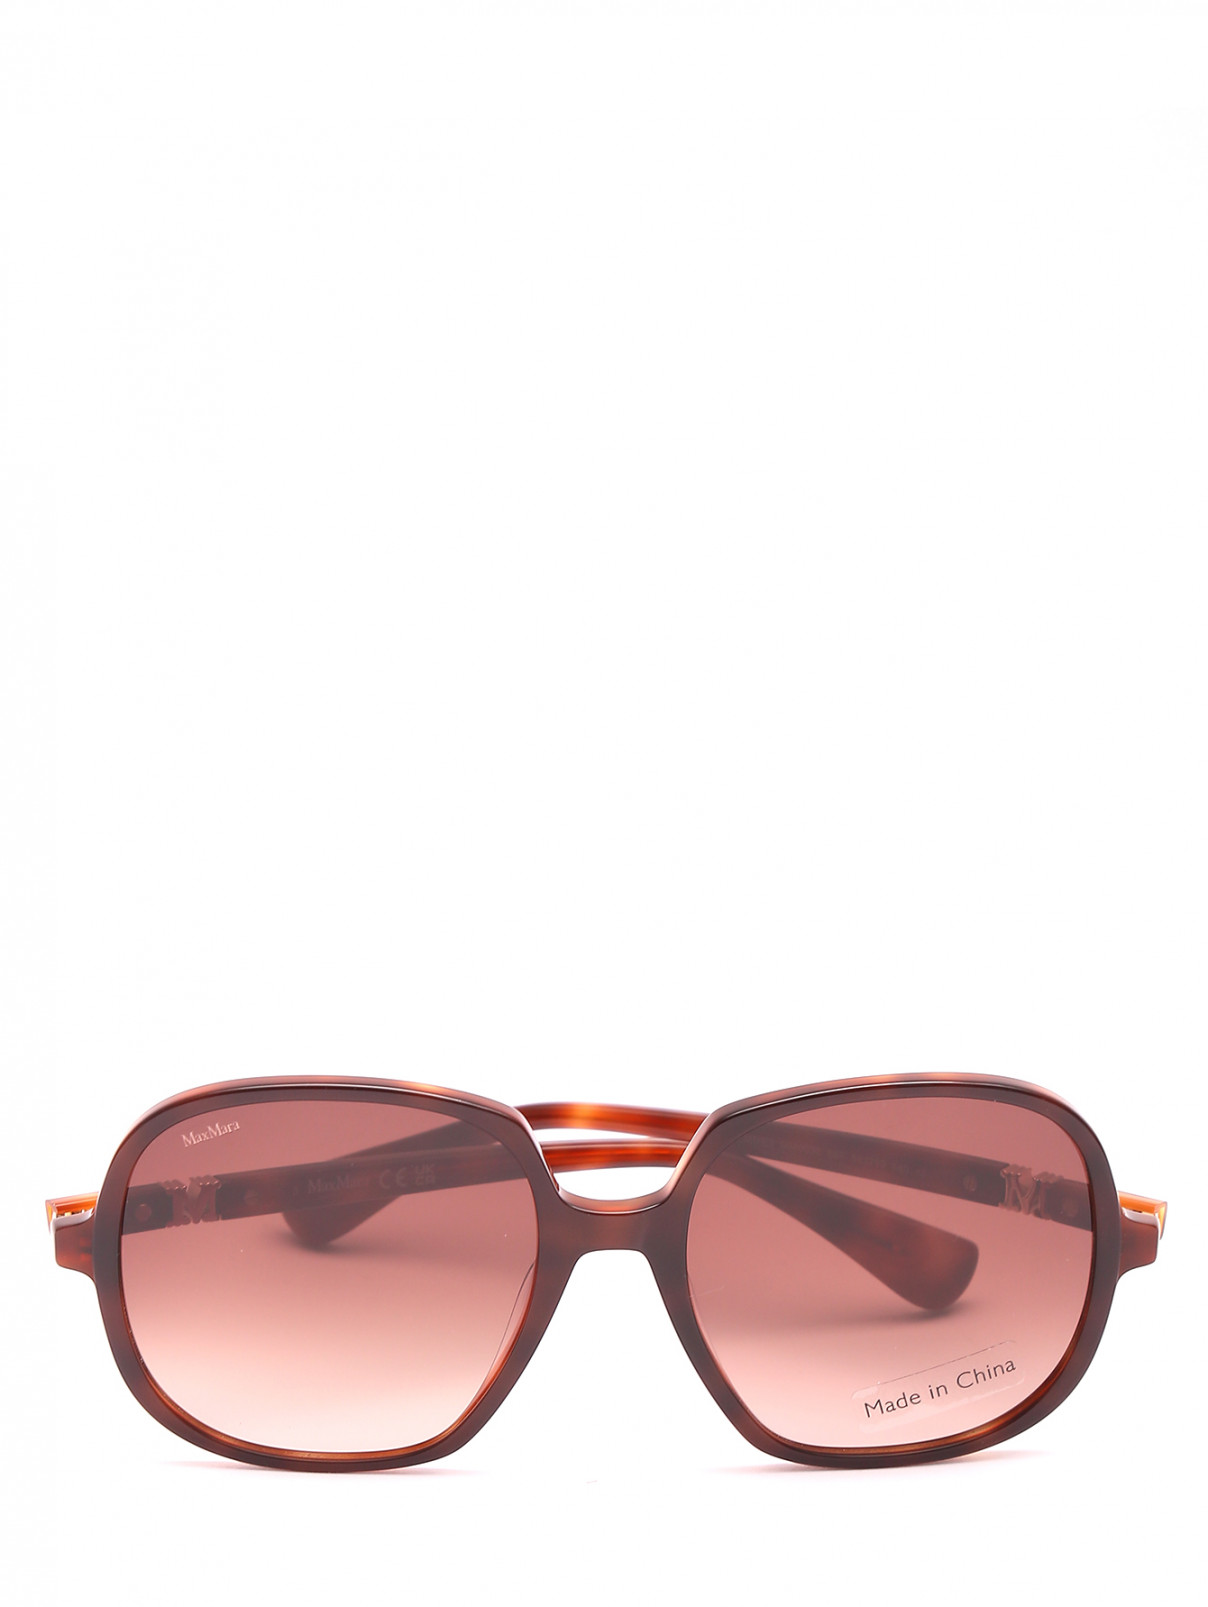 Солнцезащитные очки в оправе из пластика Max Mara  –  Общий вид  – Цвет:  Коричневый